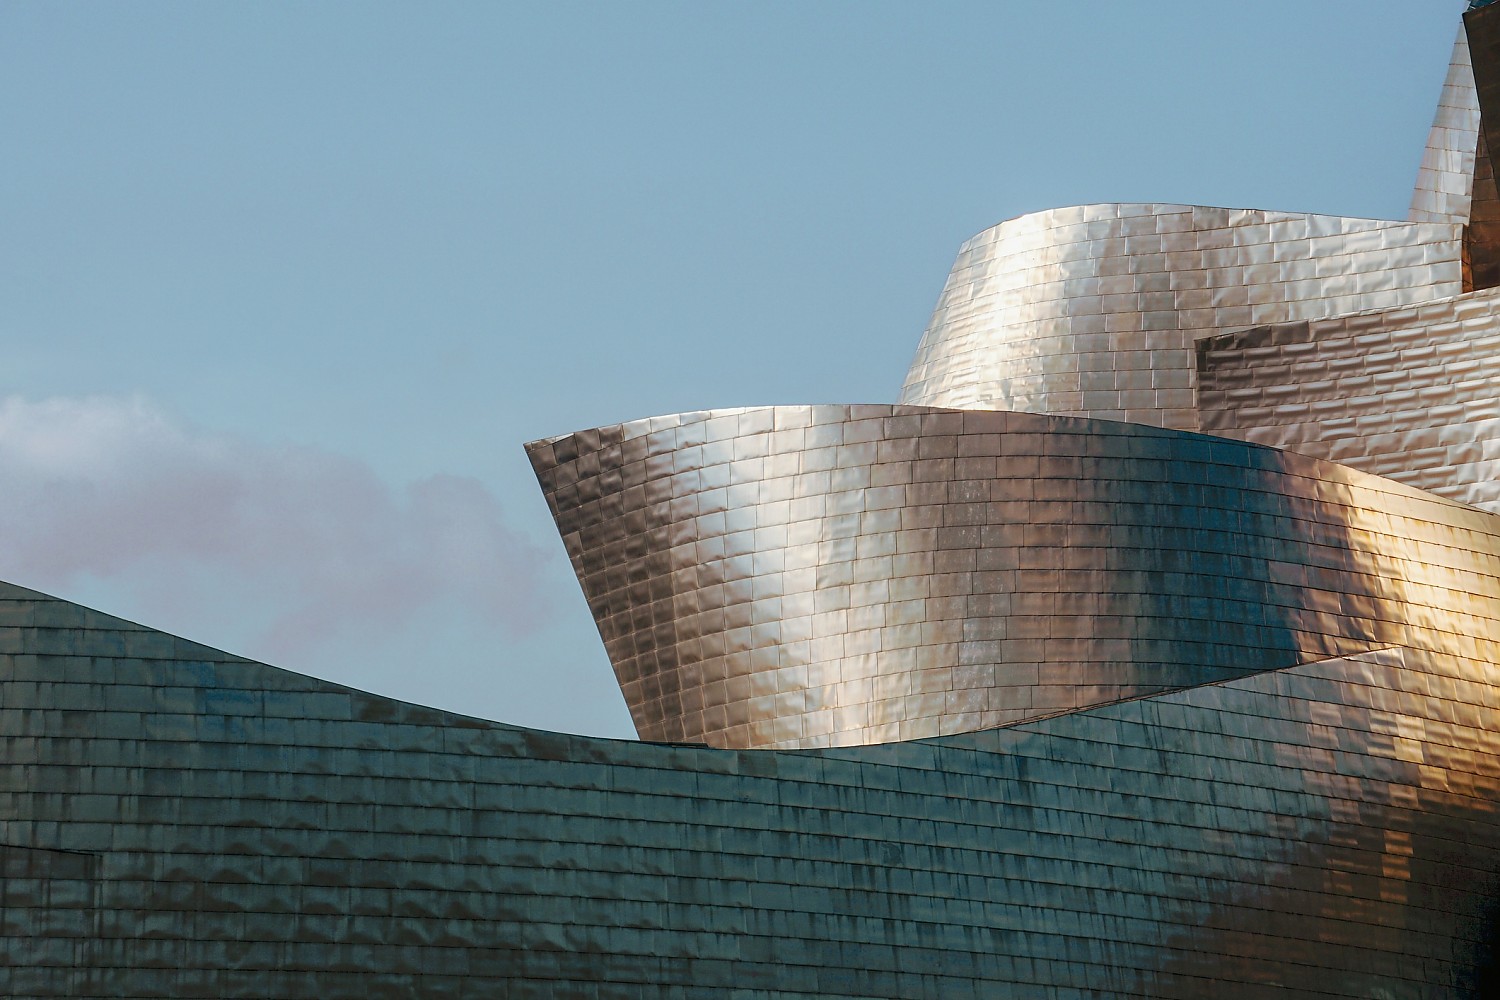 In Focus: Em busca do equilíbrio perfeito - dicas para envolver o cliente no processo de criação, segundo Frank Gehry